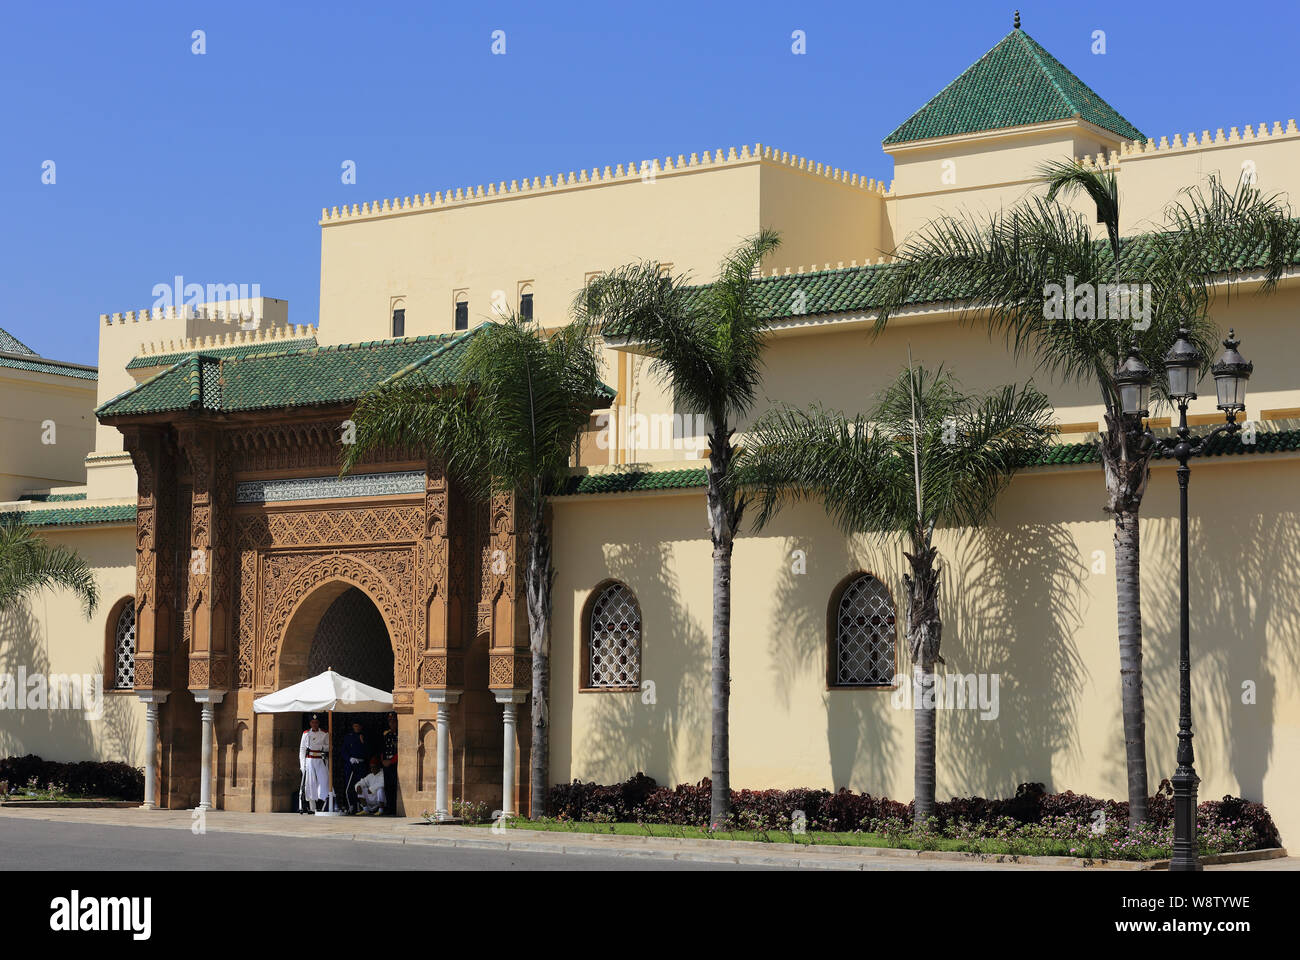 Rabat, Marocco - 25 giugno 2019. Gate e la facciata del Palazzo Reale, il re del Marocco la residenza ufficiale. Rabat è un sito Patrimonio Mondiale dell'UNESCO. Foto Stock